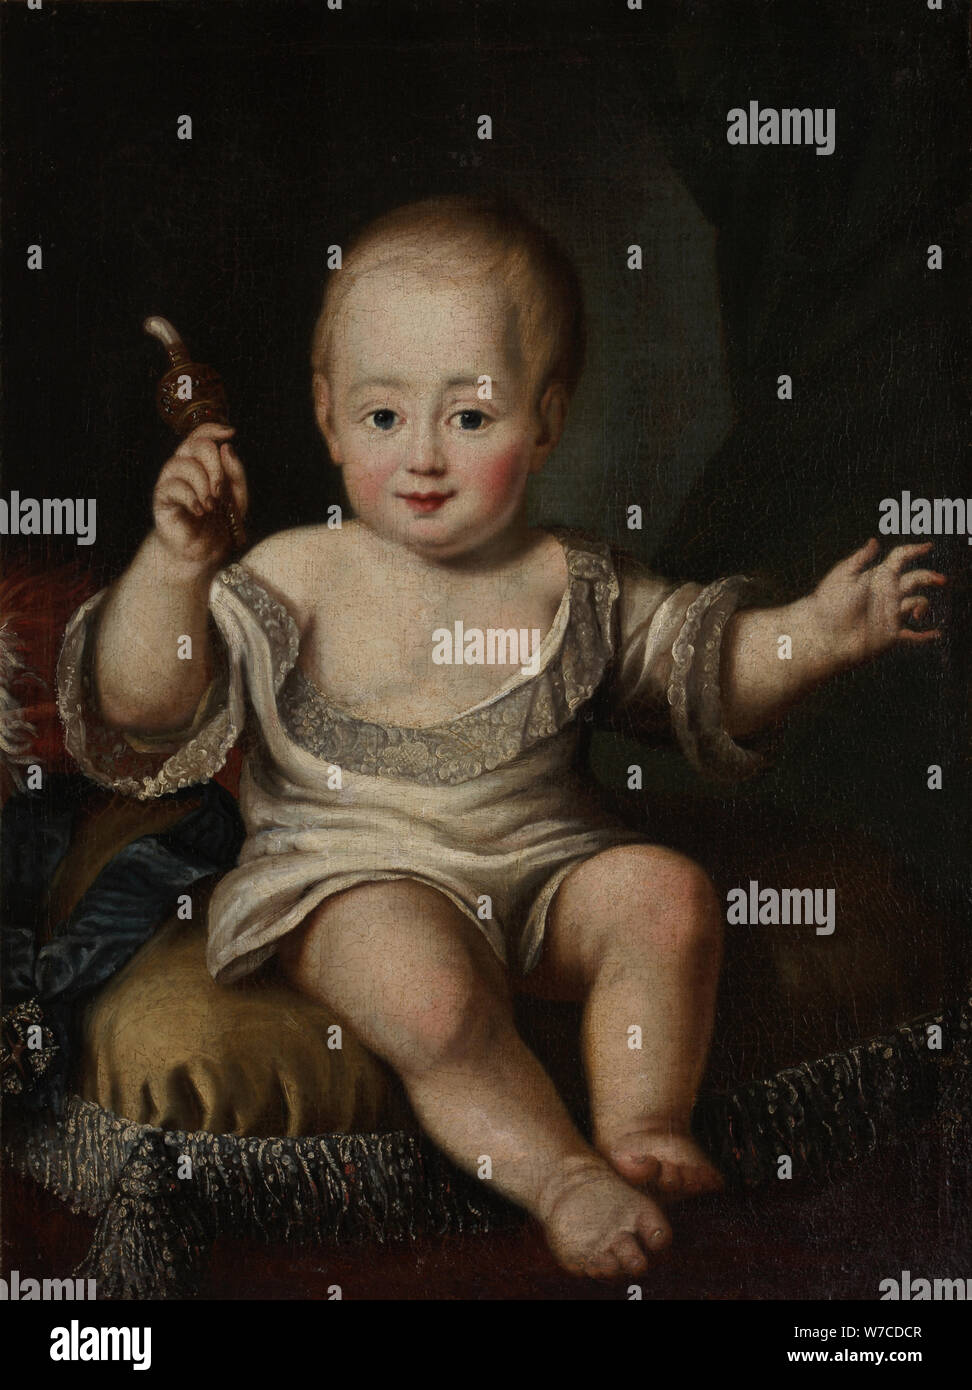 Ritratto del granduca Alessandro Pavlovich della Russia (1777-1825) come bambino. Foto Stock